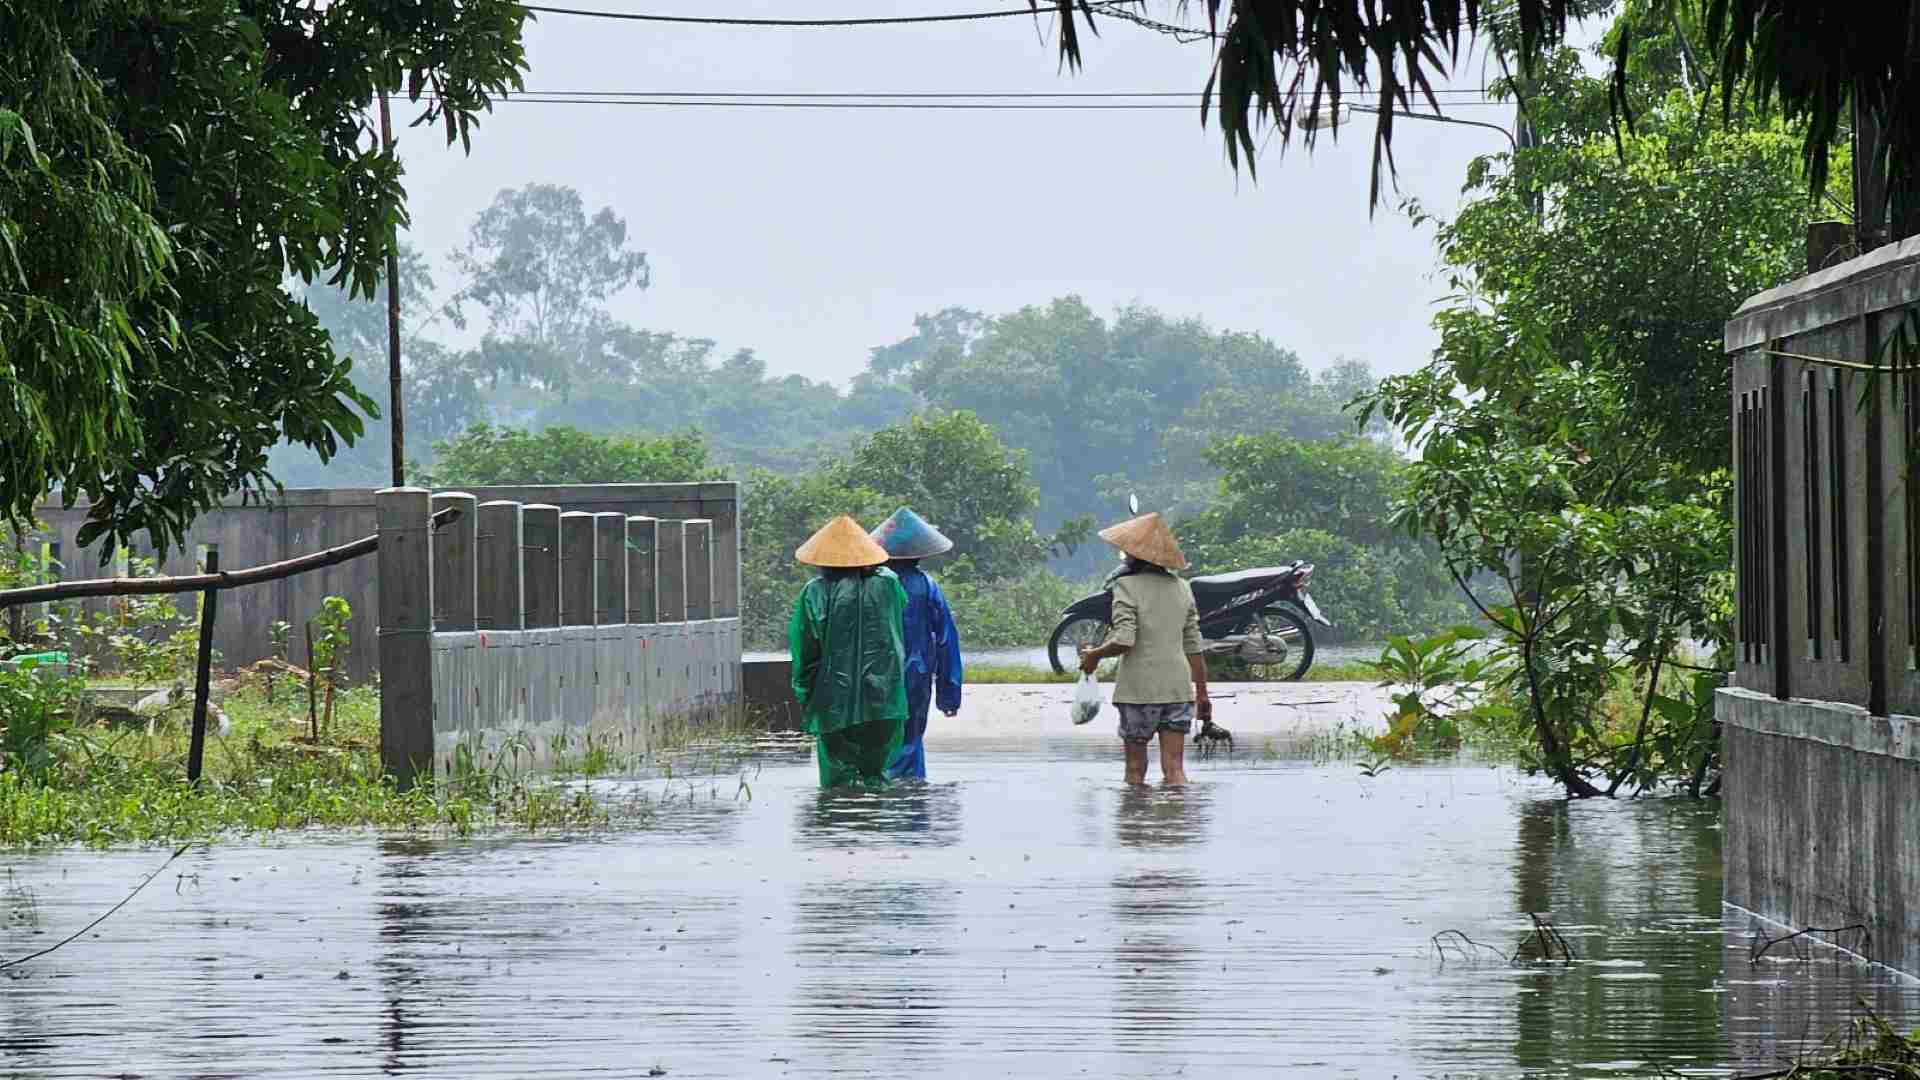 Cái làng thấp trũng nhất ở Thừa Thiên Huế, ngan, vịt bơi đầy sân, gà &quot;chạy&quot; lên gác, đường xóm thành sông - Ảnh 3.